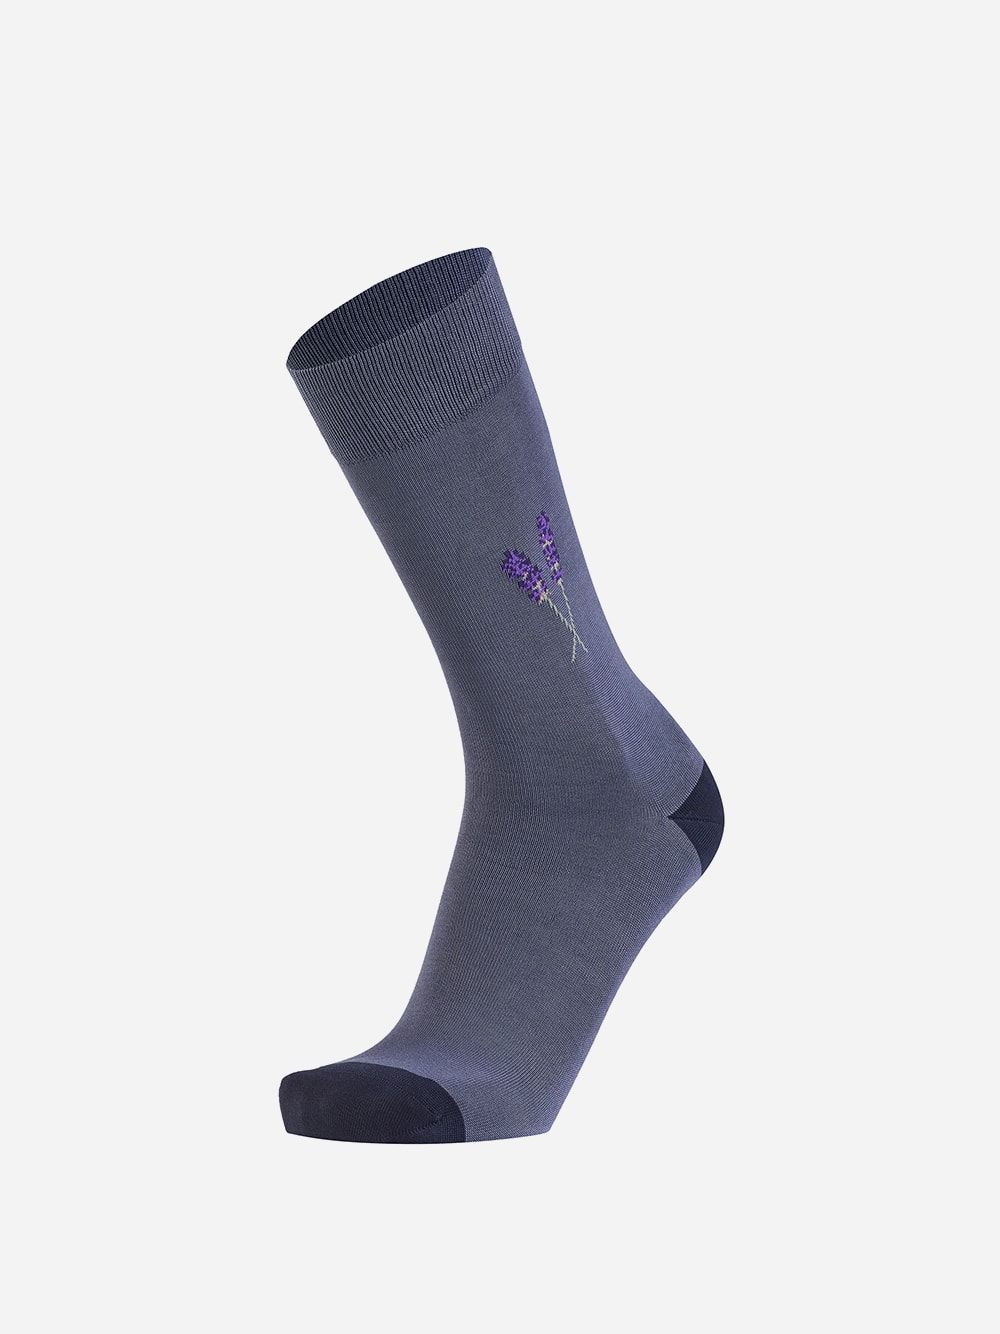 Grey Socks Lavender | Westmister 